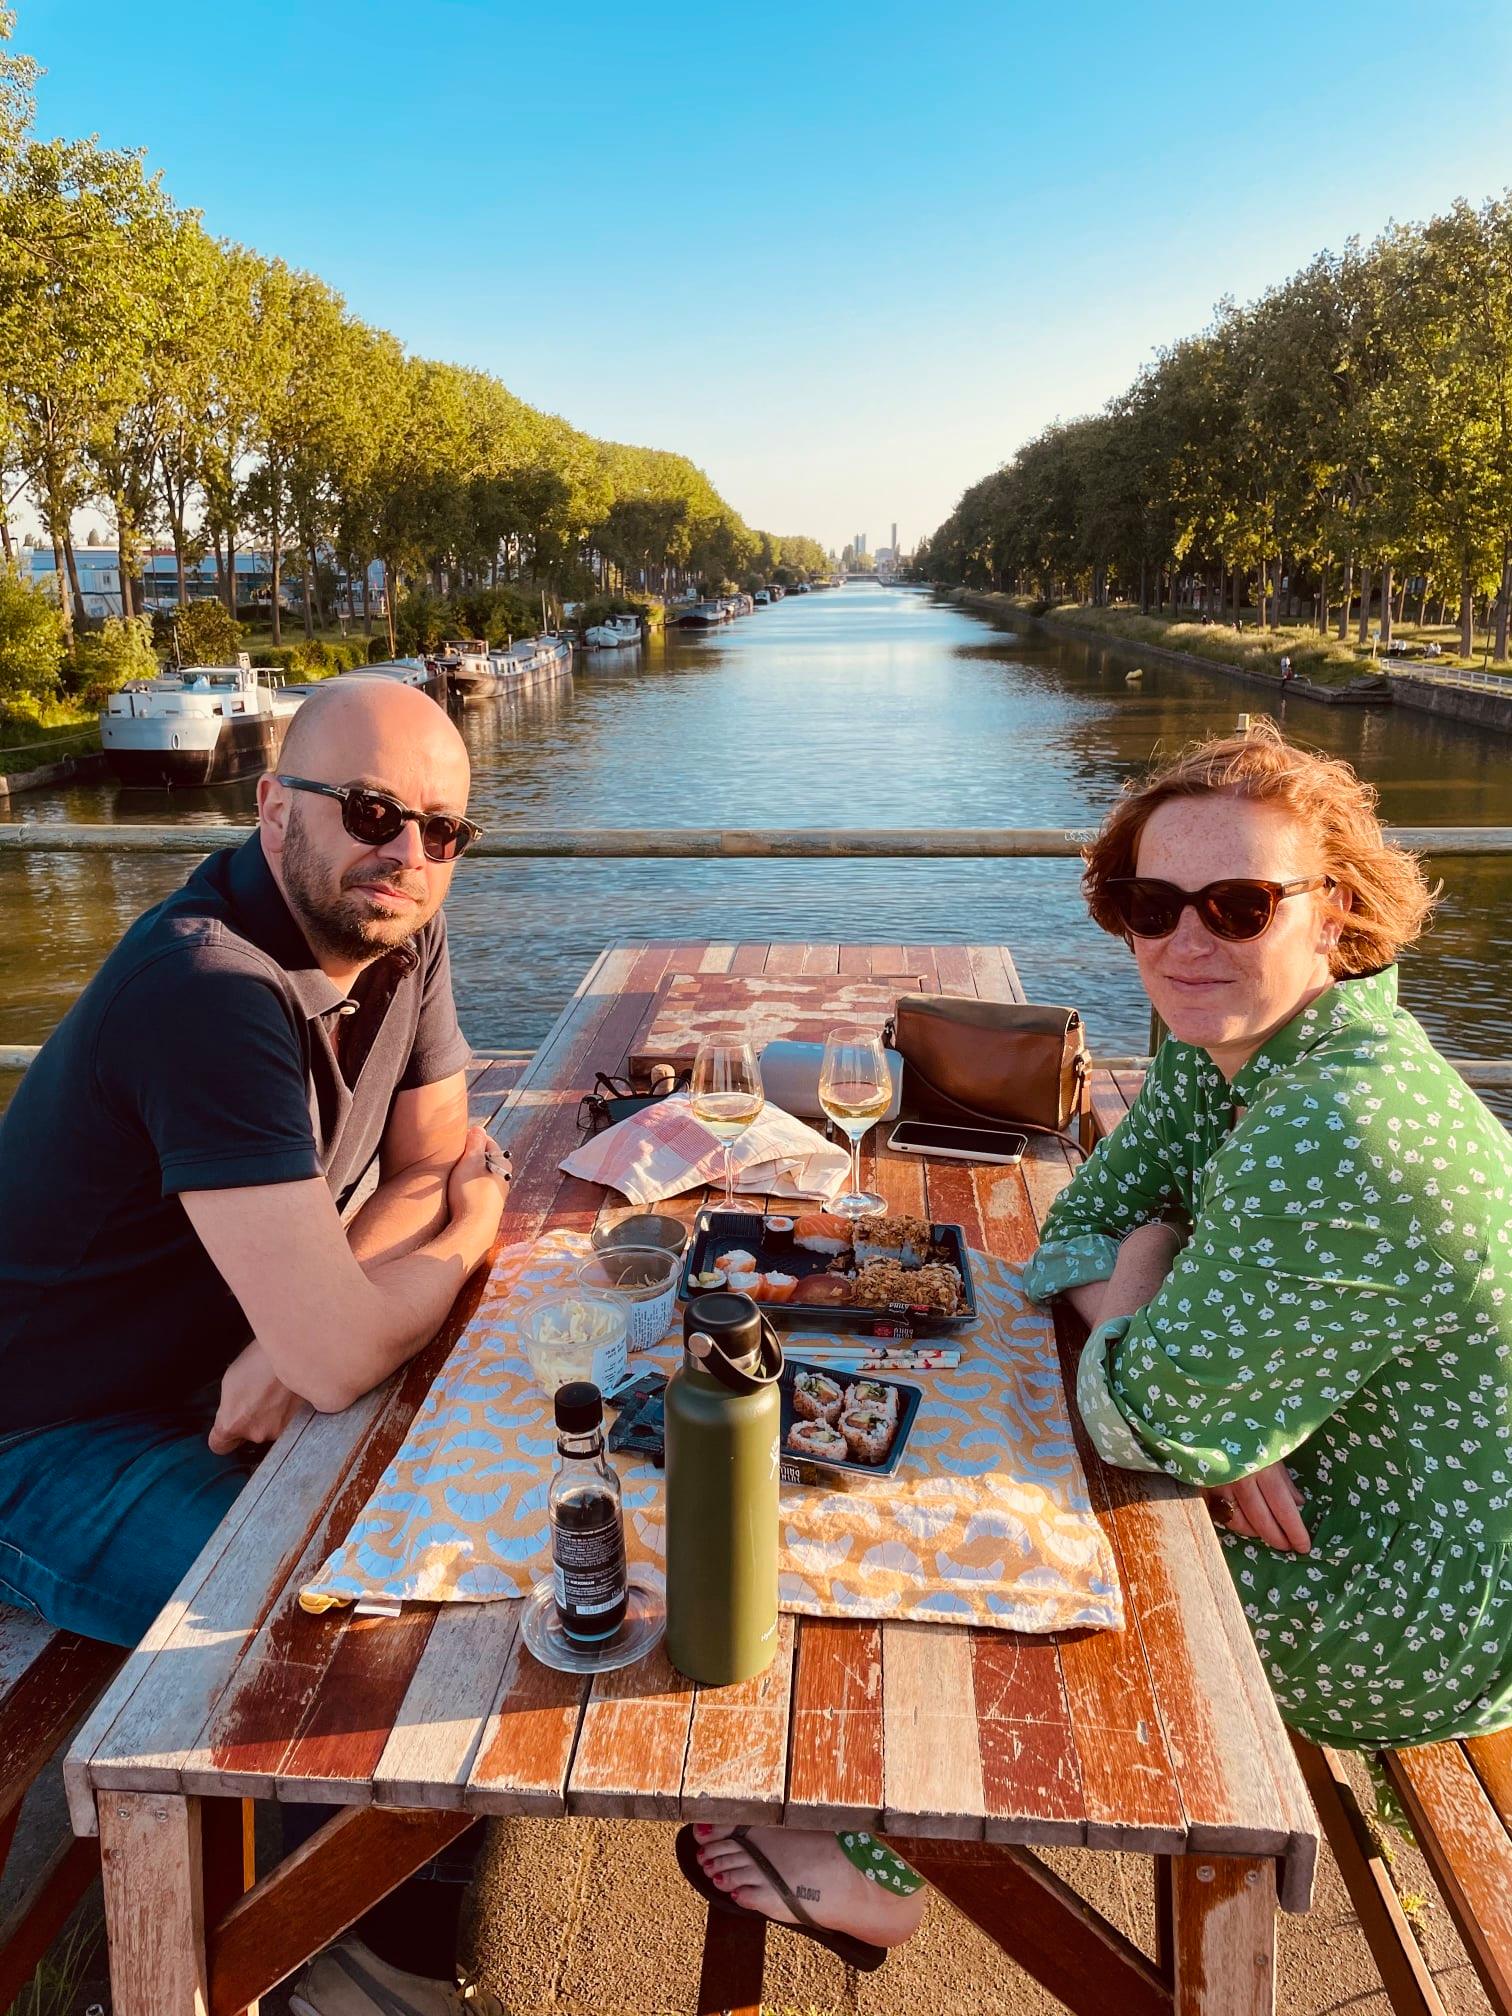 LES AMIS DU PONT #6 Dat onze brug de ideale plek is voor een romantisch diner bij zonsondergang, weten ook Wim uit Halle en Lore uit Sint-Gillis. See less — feeling romantic.